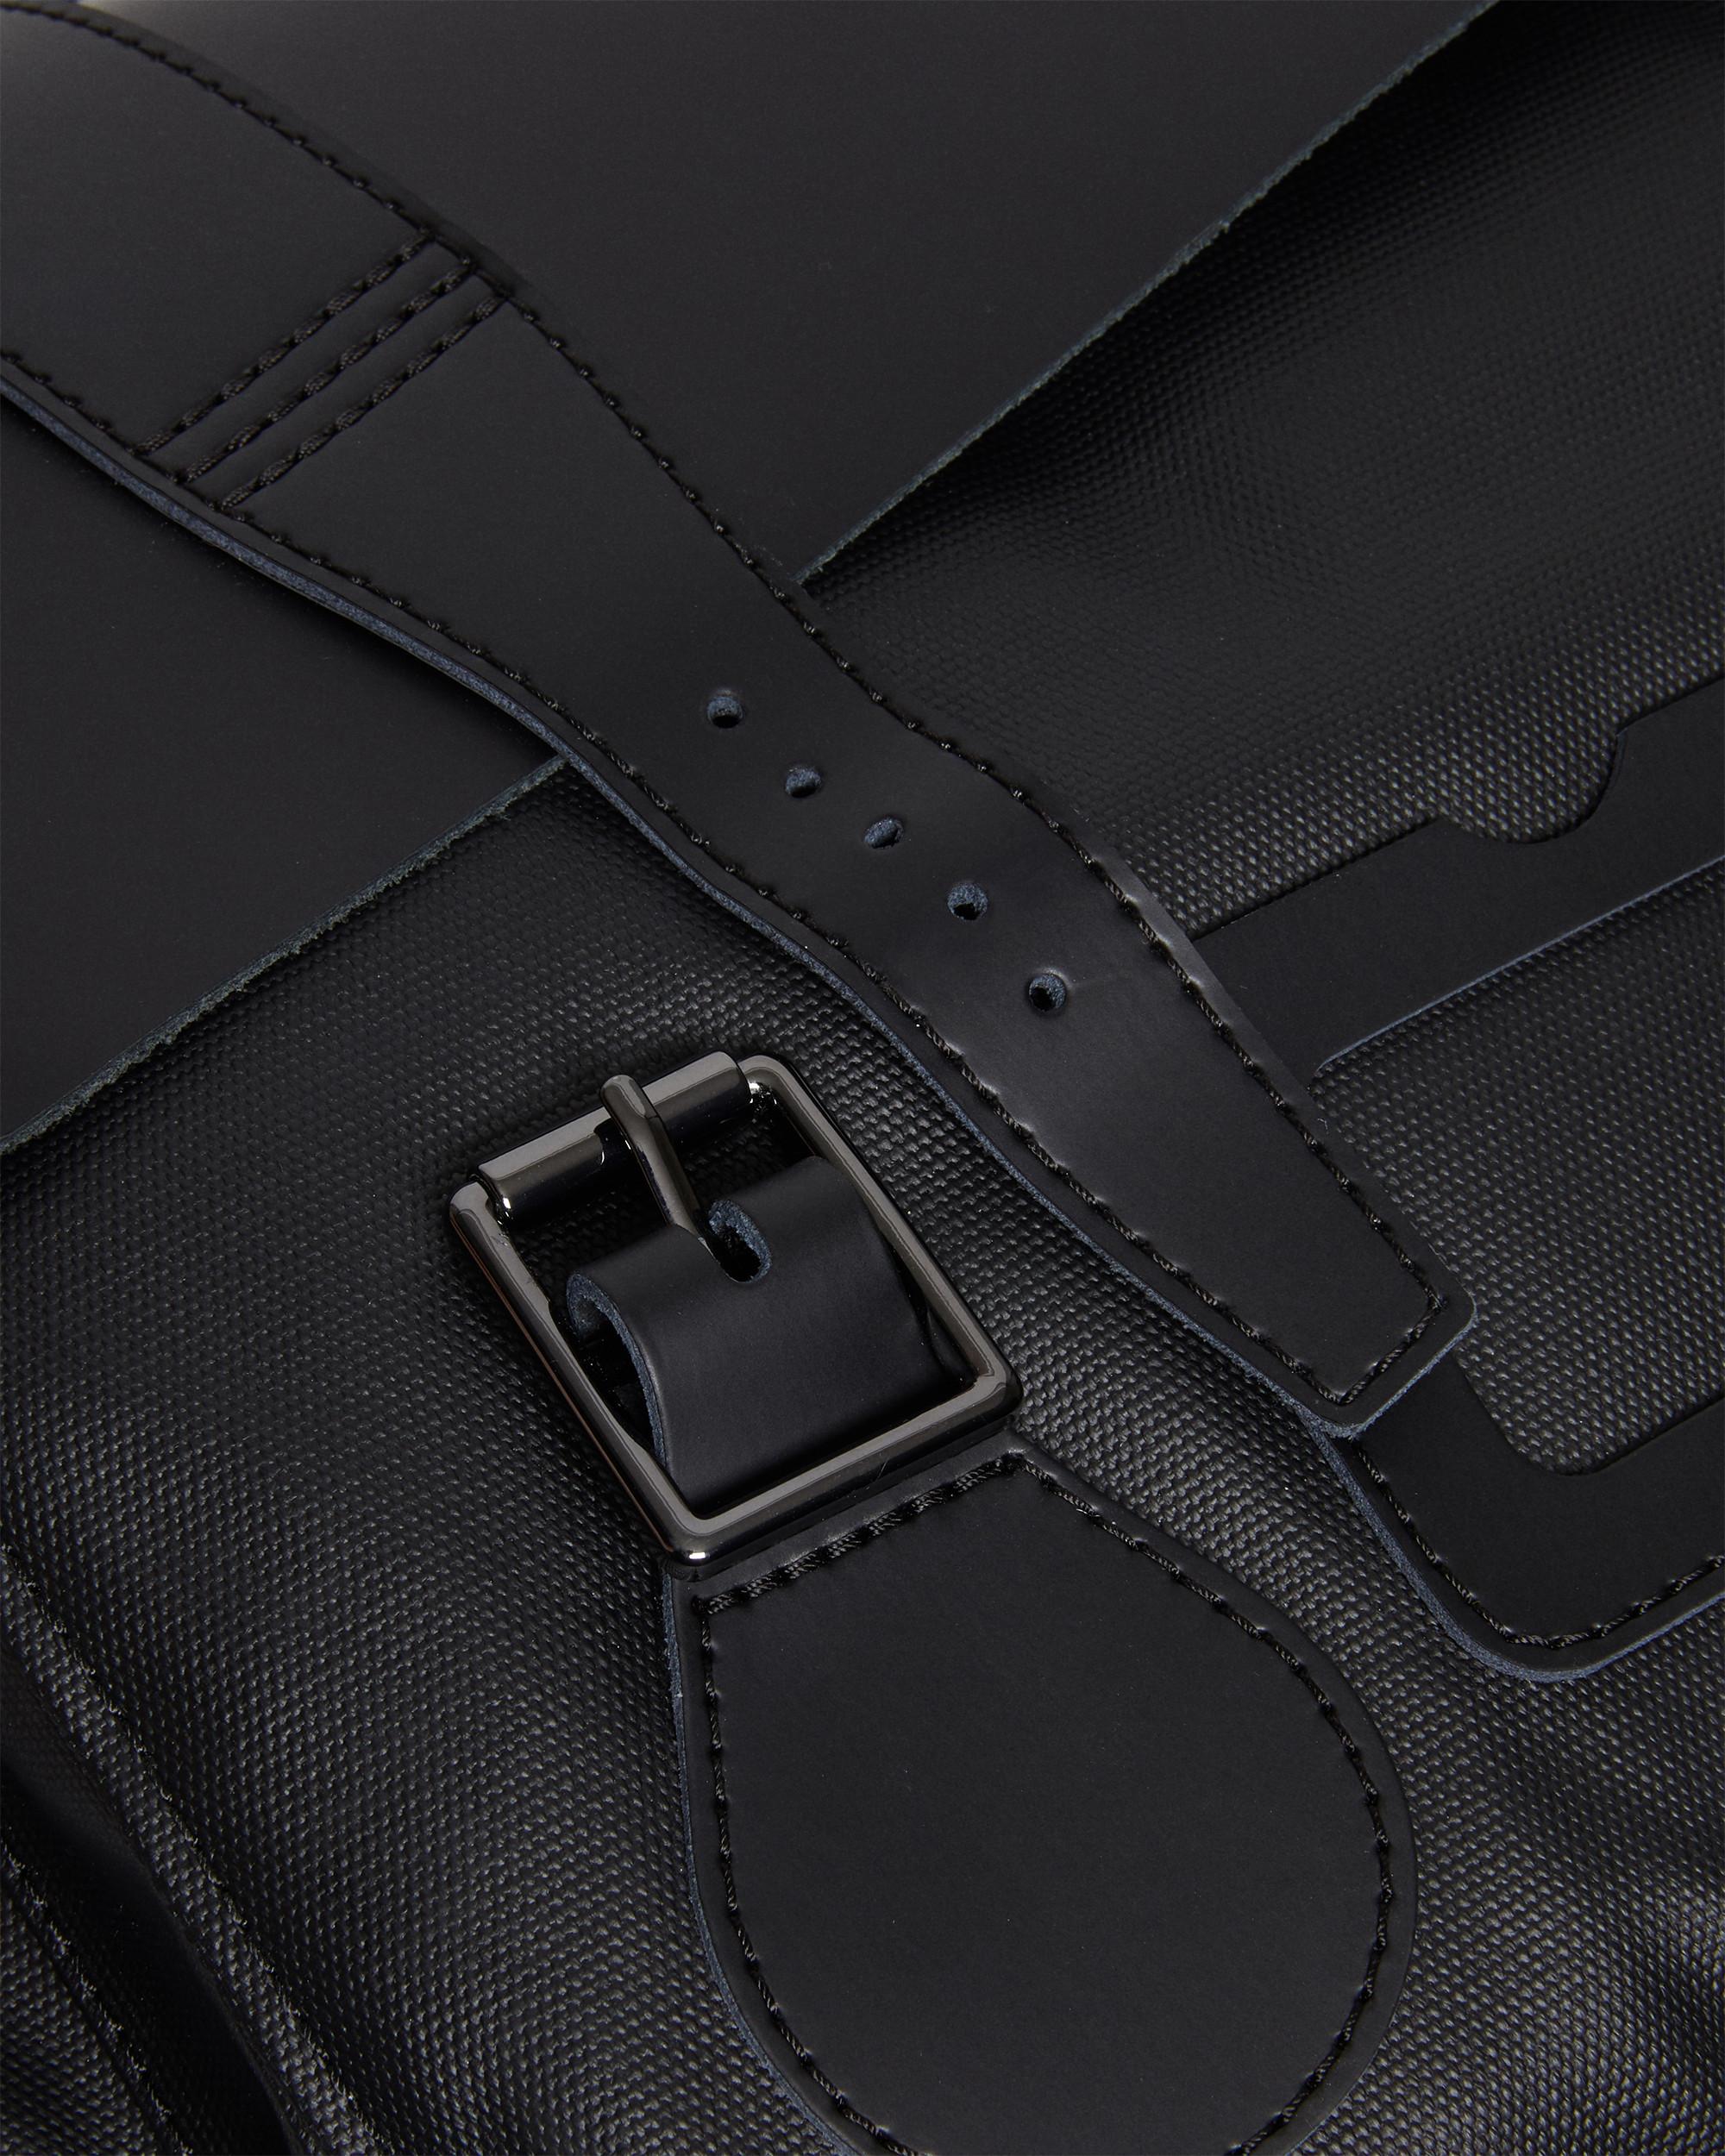 Dr Martens Messenger Bag/ Satchel/Black Leather/ NWOT